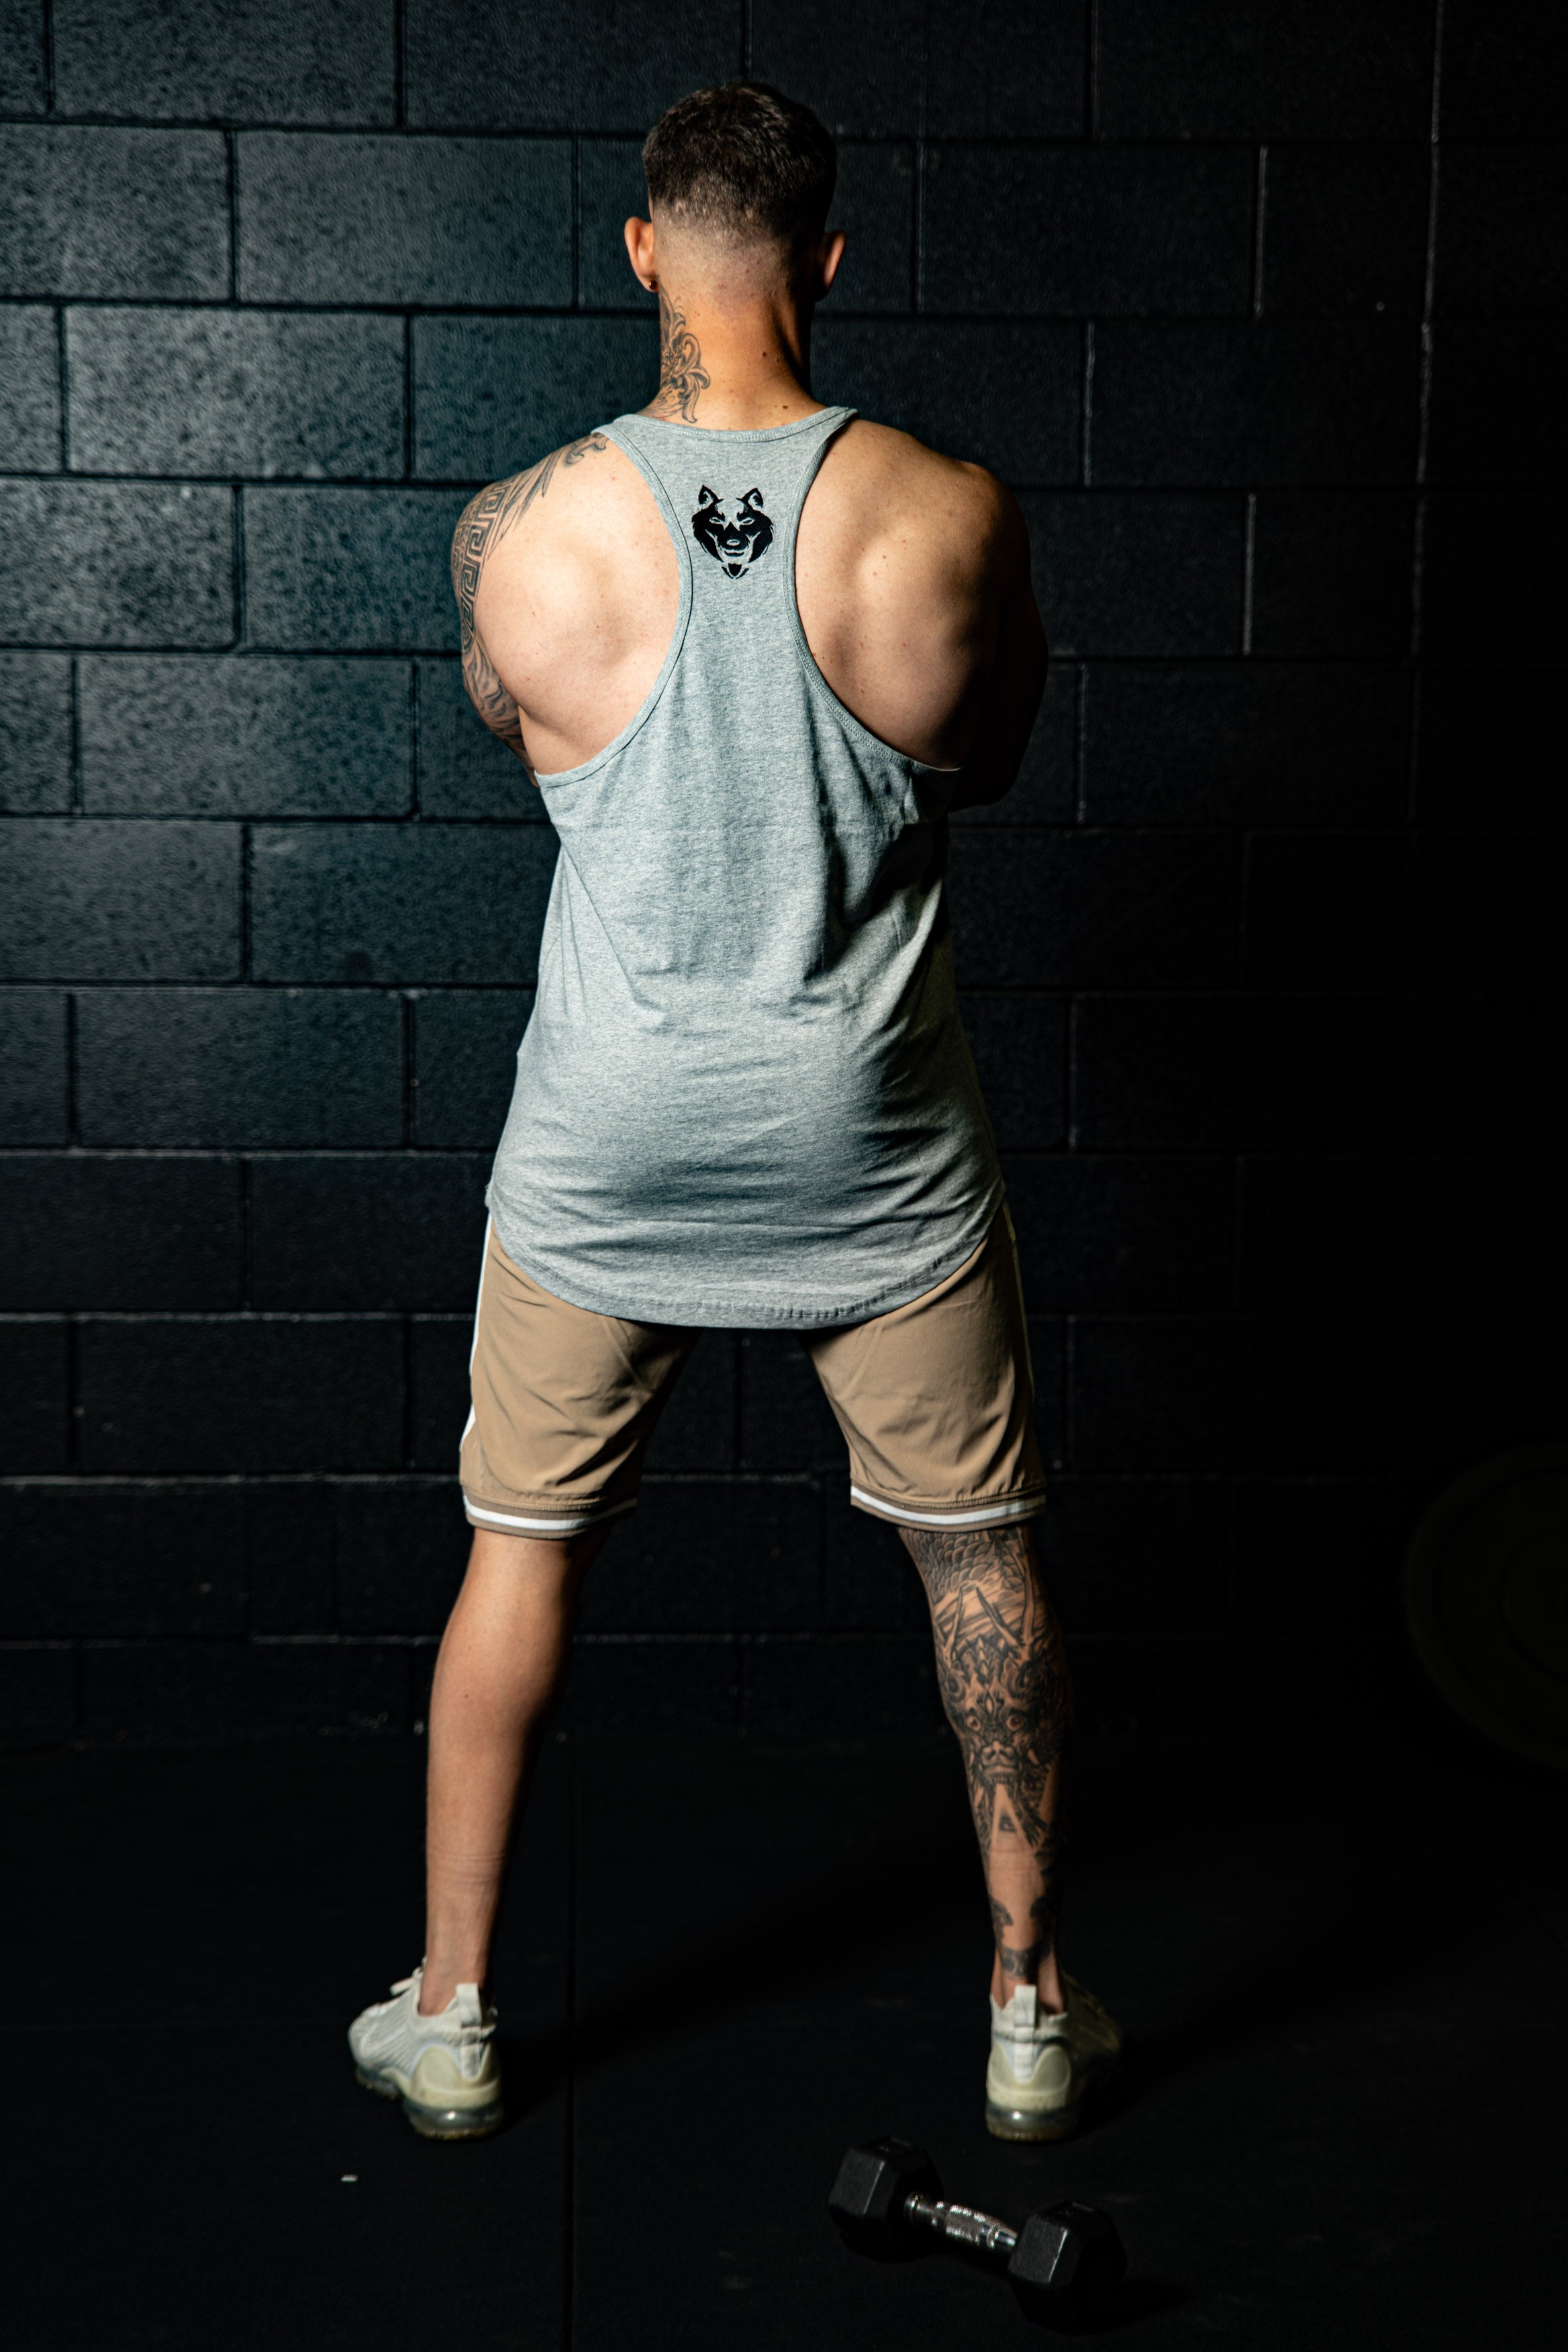 Fitnessfox Muscle Tank Top ( Grey)